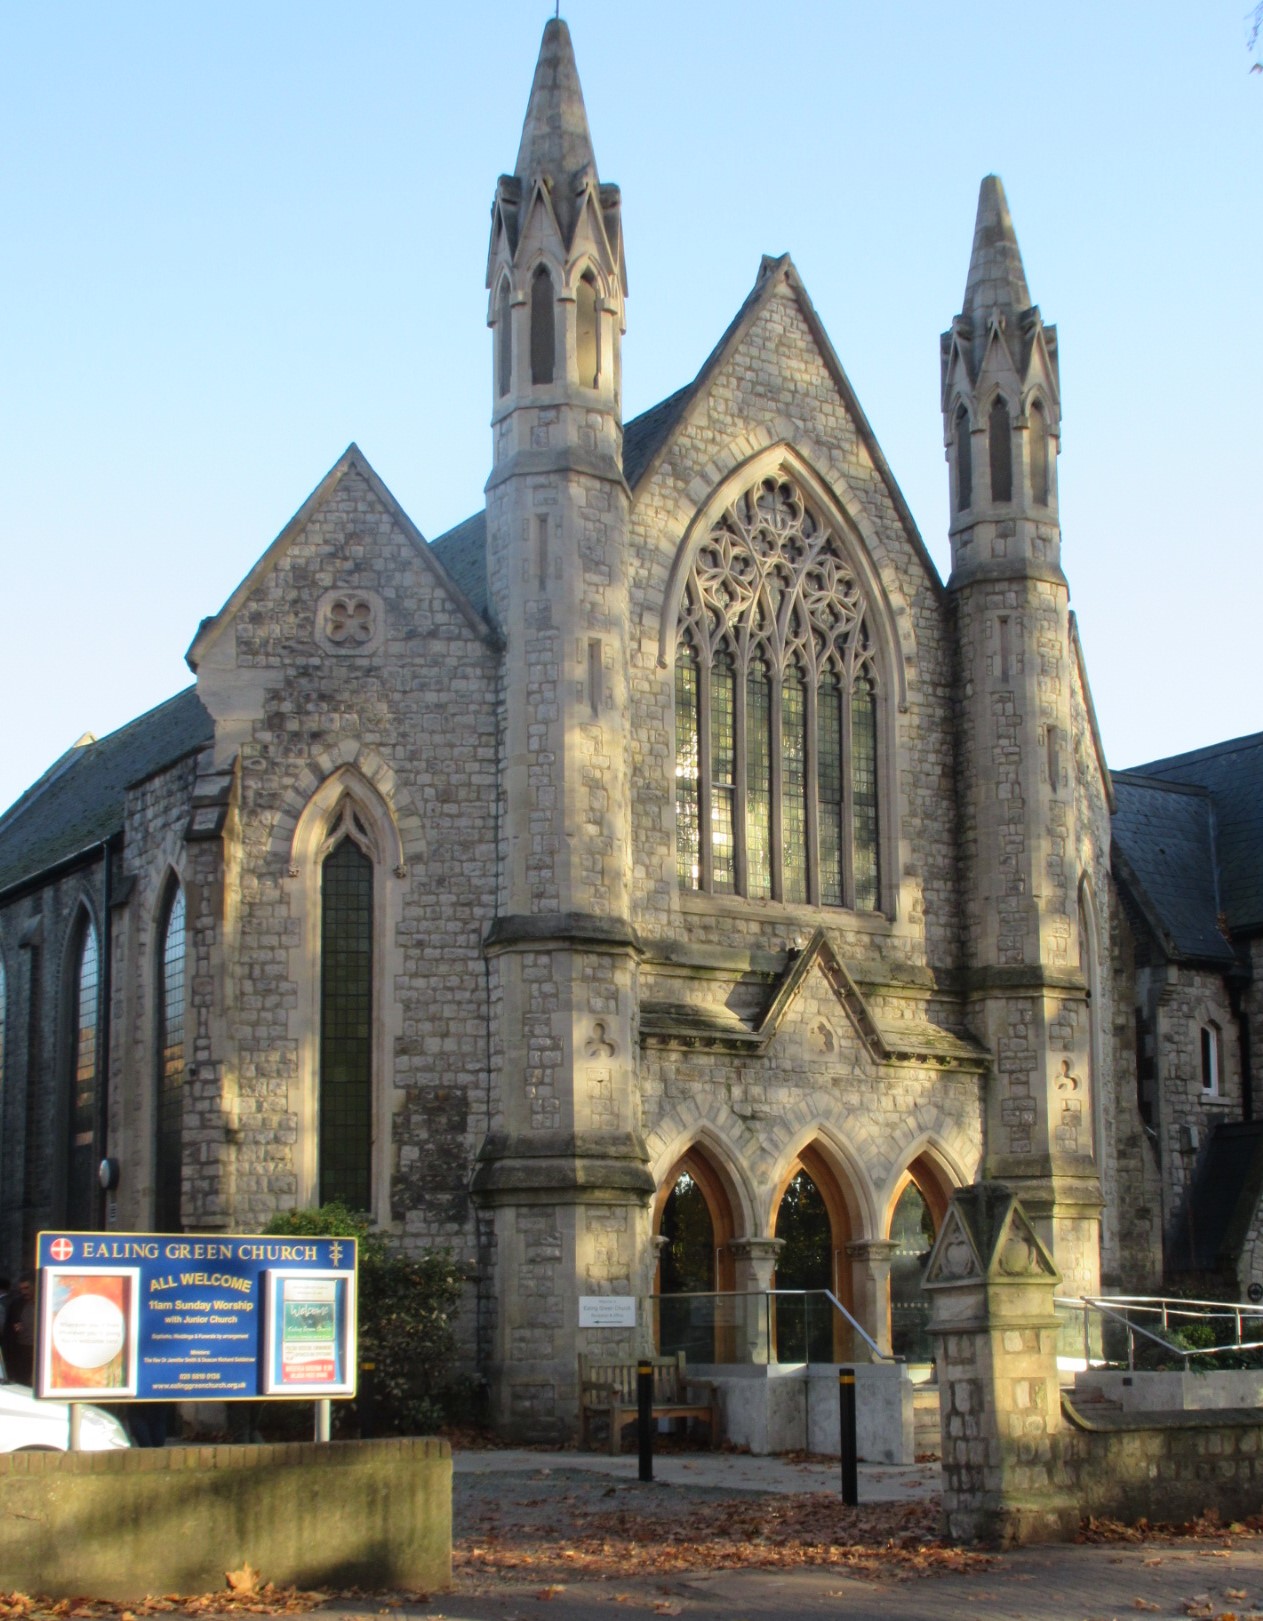 Ealing Green Church - Our talks venue